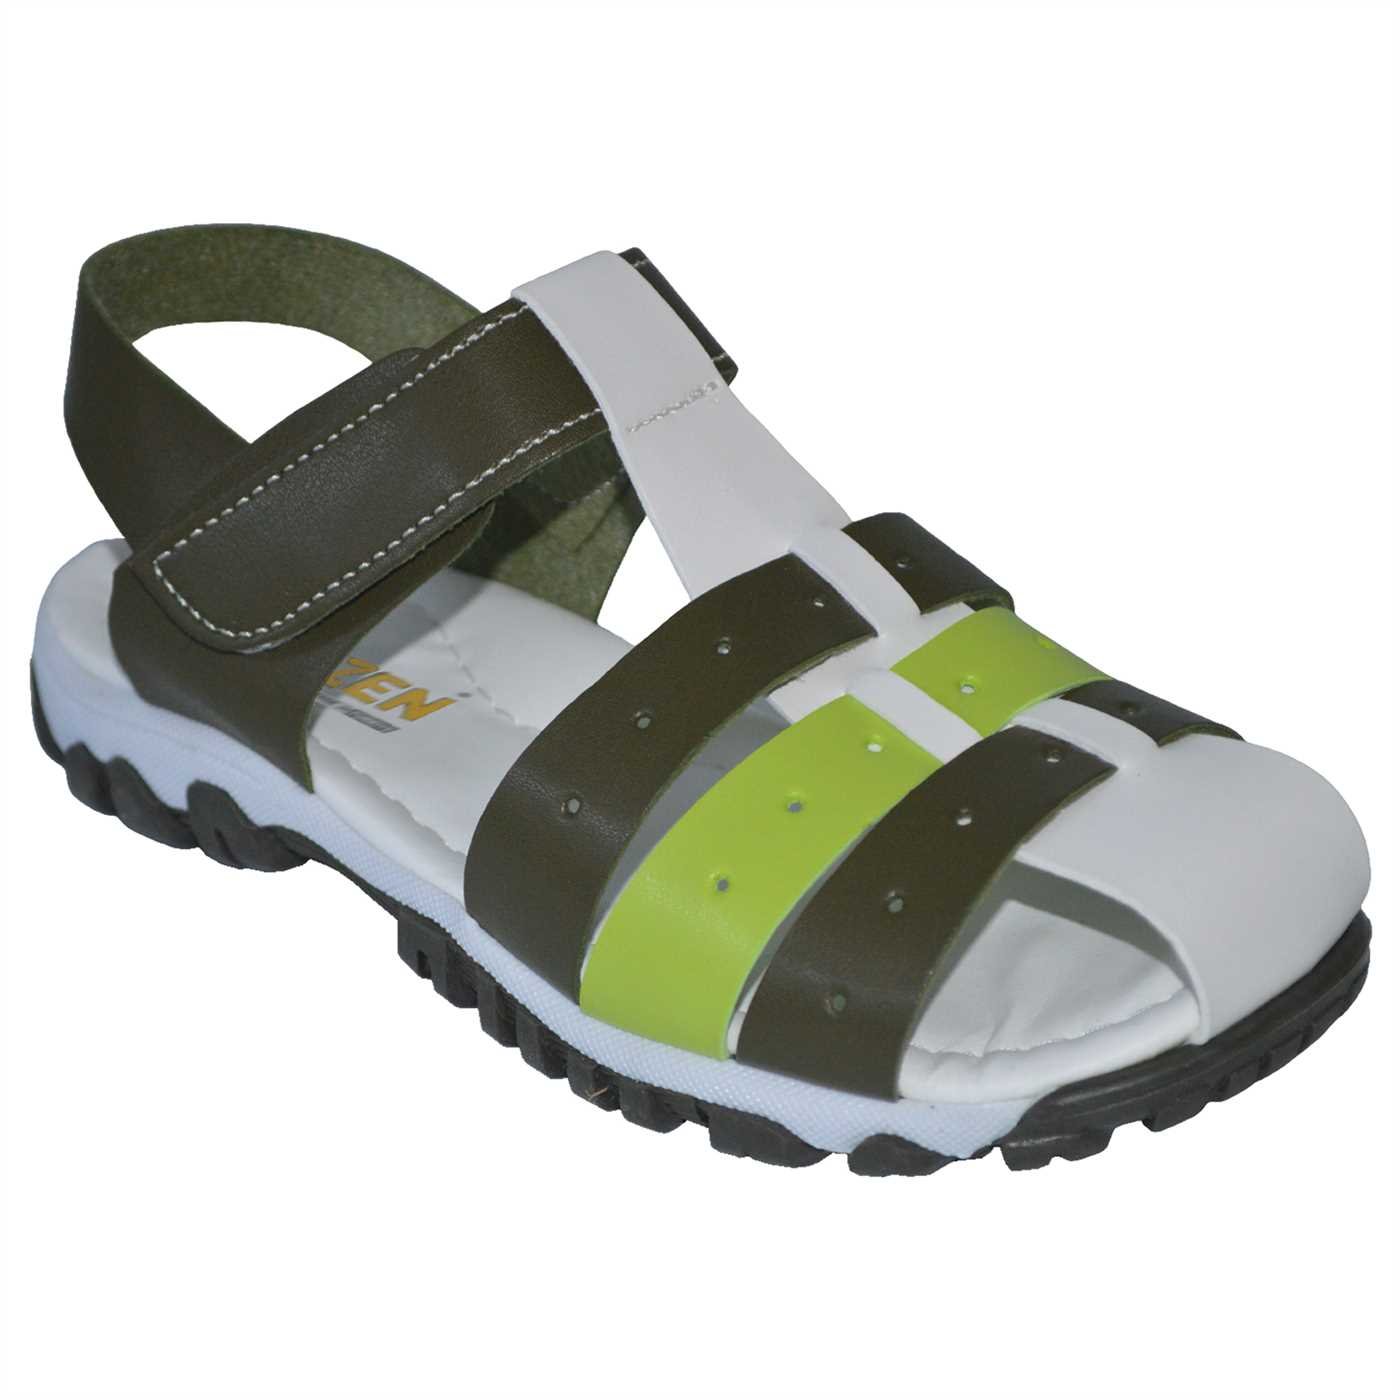 filet erkek çocuk sandalet - haki/beyaz/yeşil